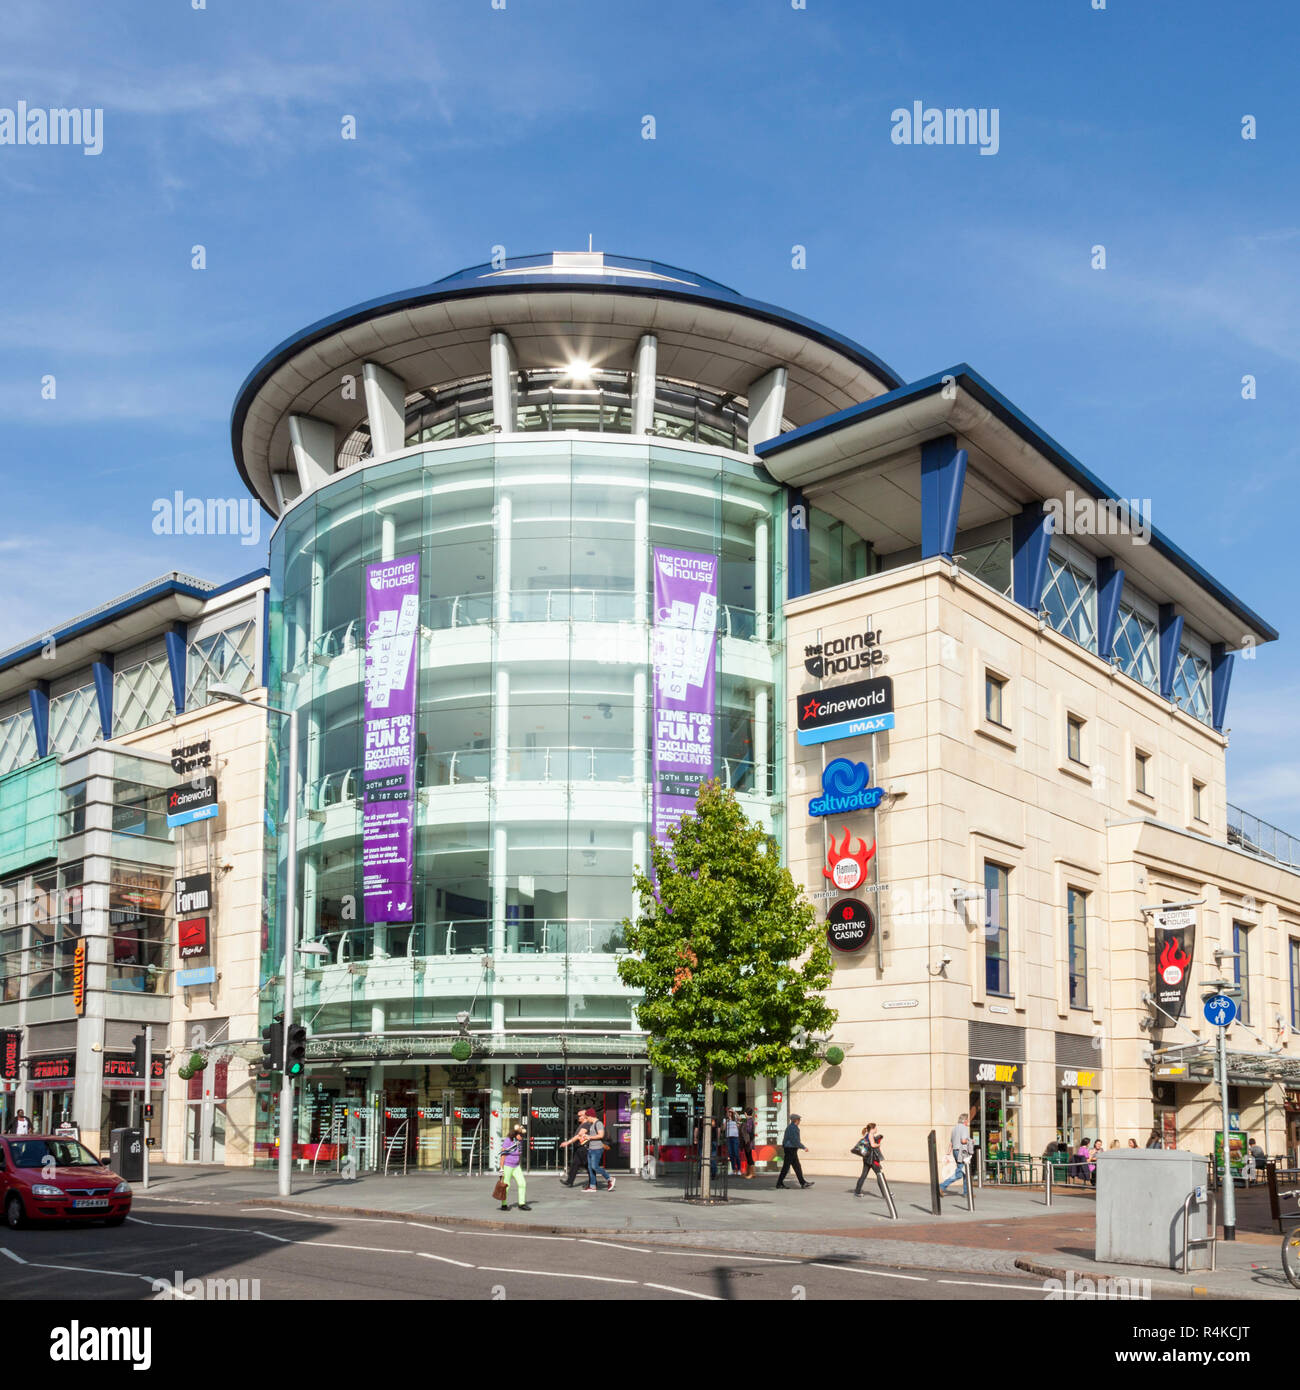 Das Eckhaus, Nottingham, ein Cineworld Multiplex Kino mit Bars und Restaurants. Nottingham, England, Großbritannien Stockfoto